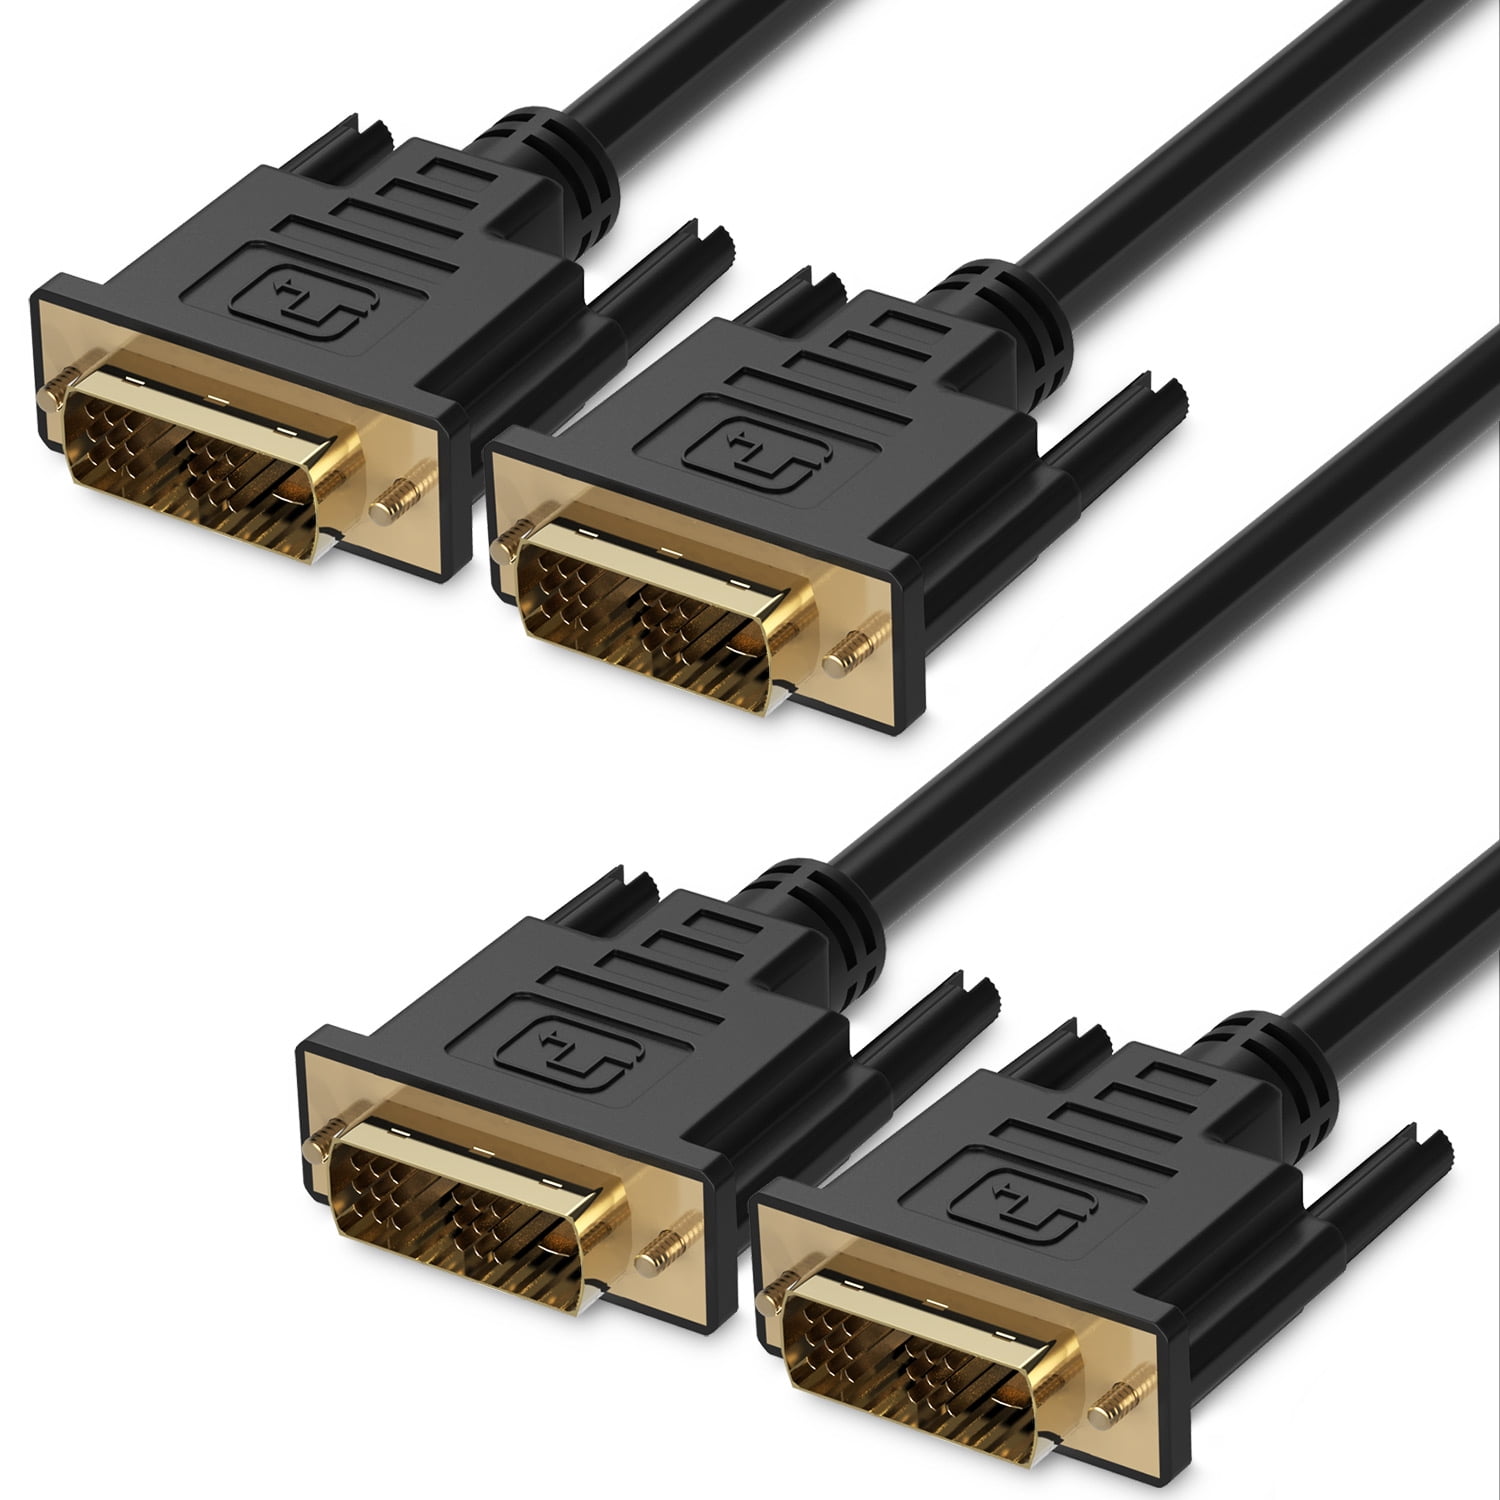  DVI  Cable  10FT 2 Pack Fosmon DVI  to DVI  18 1 Pin DVI  